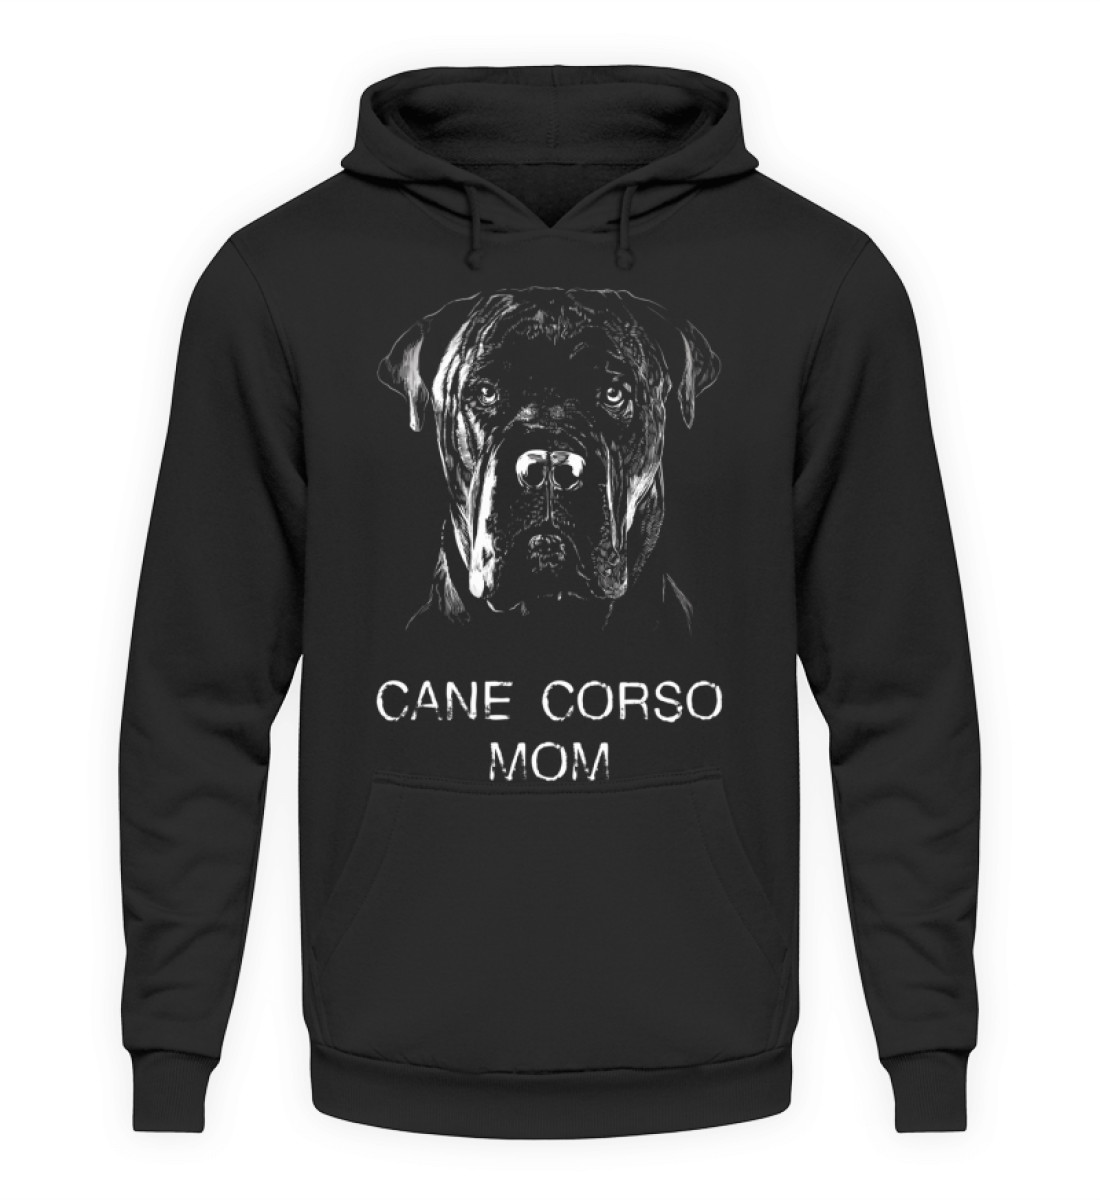 Cane Corso Mom - Hoodie für Hunde-Frauchen - Unisex Kapuzenpullover Hoodie-639